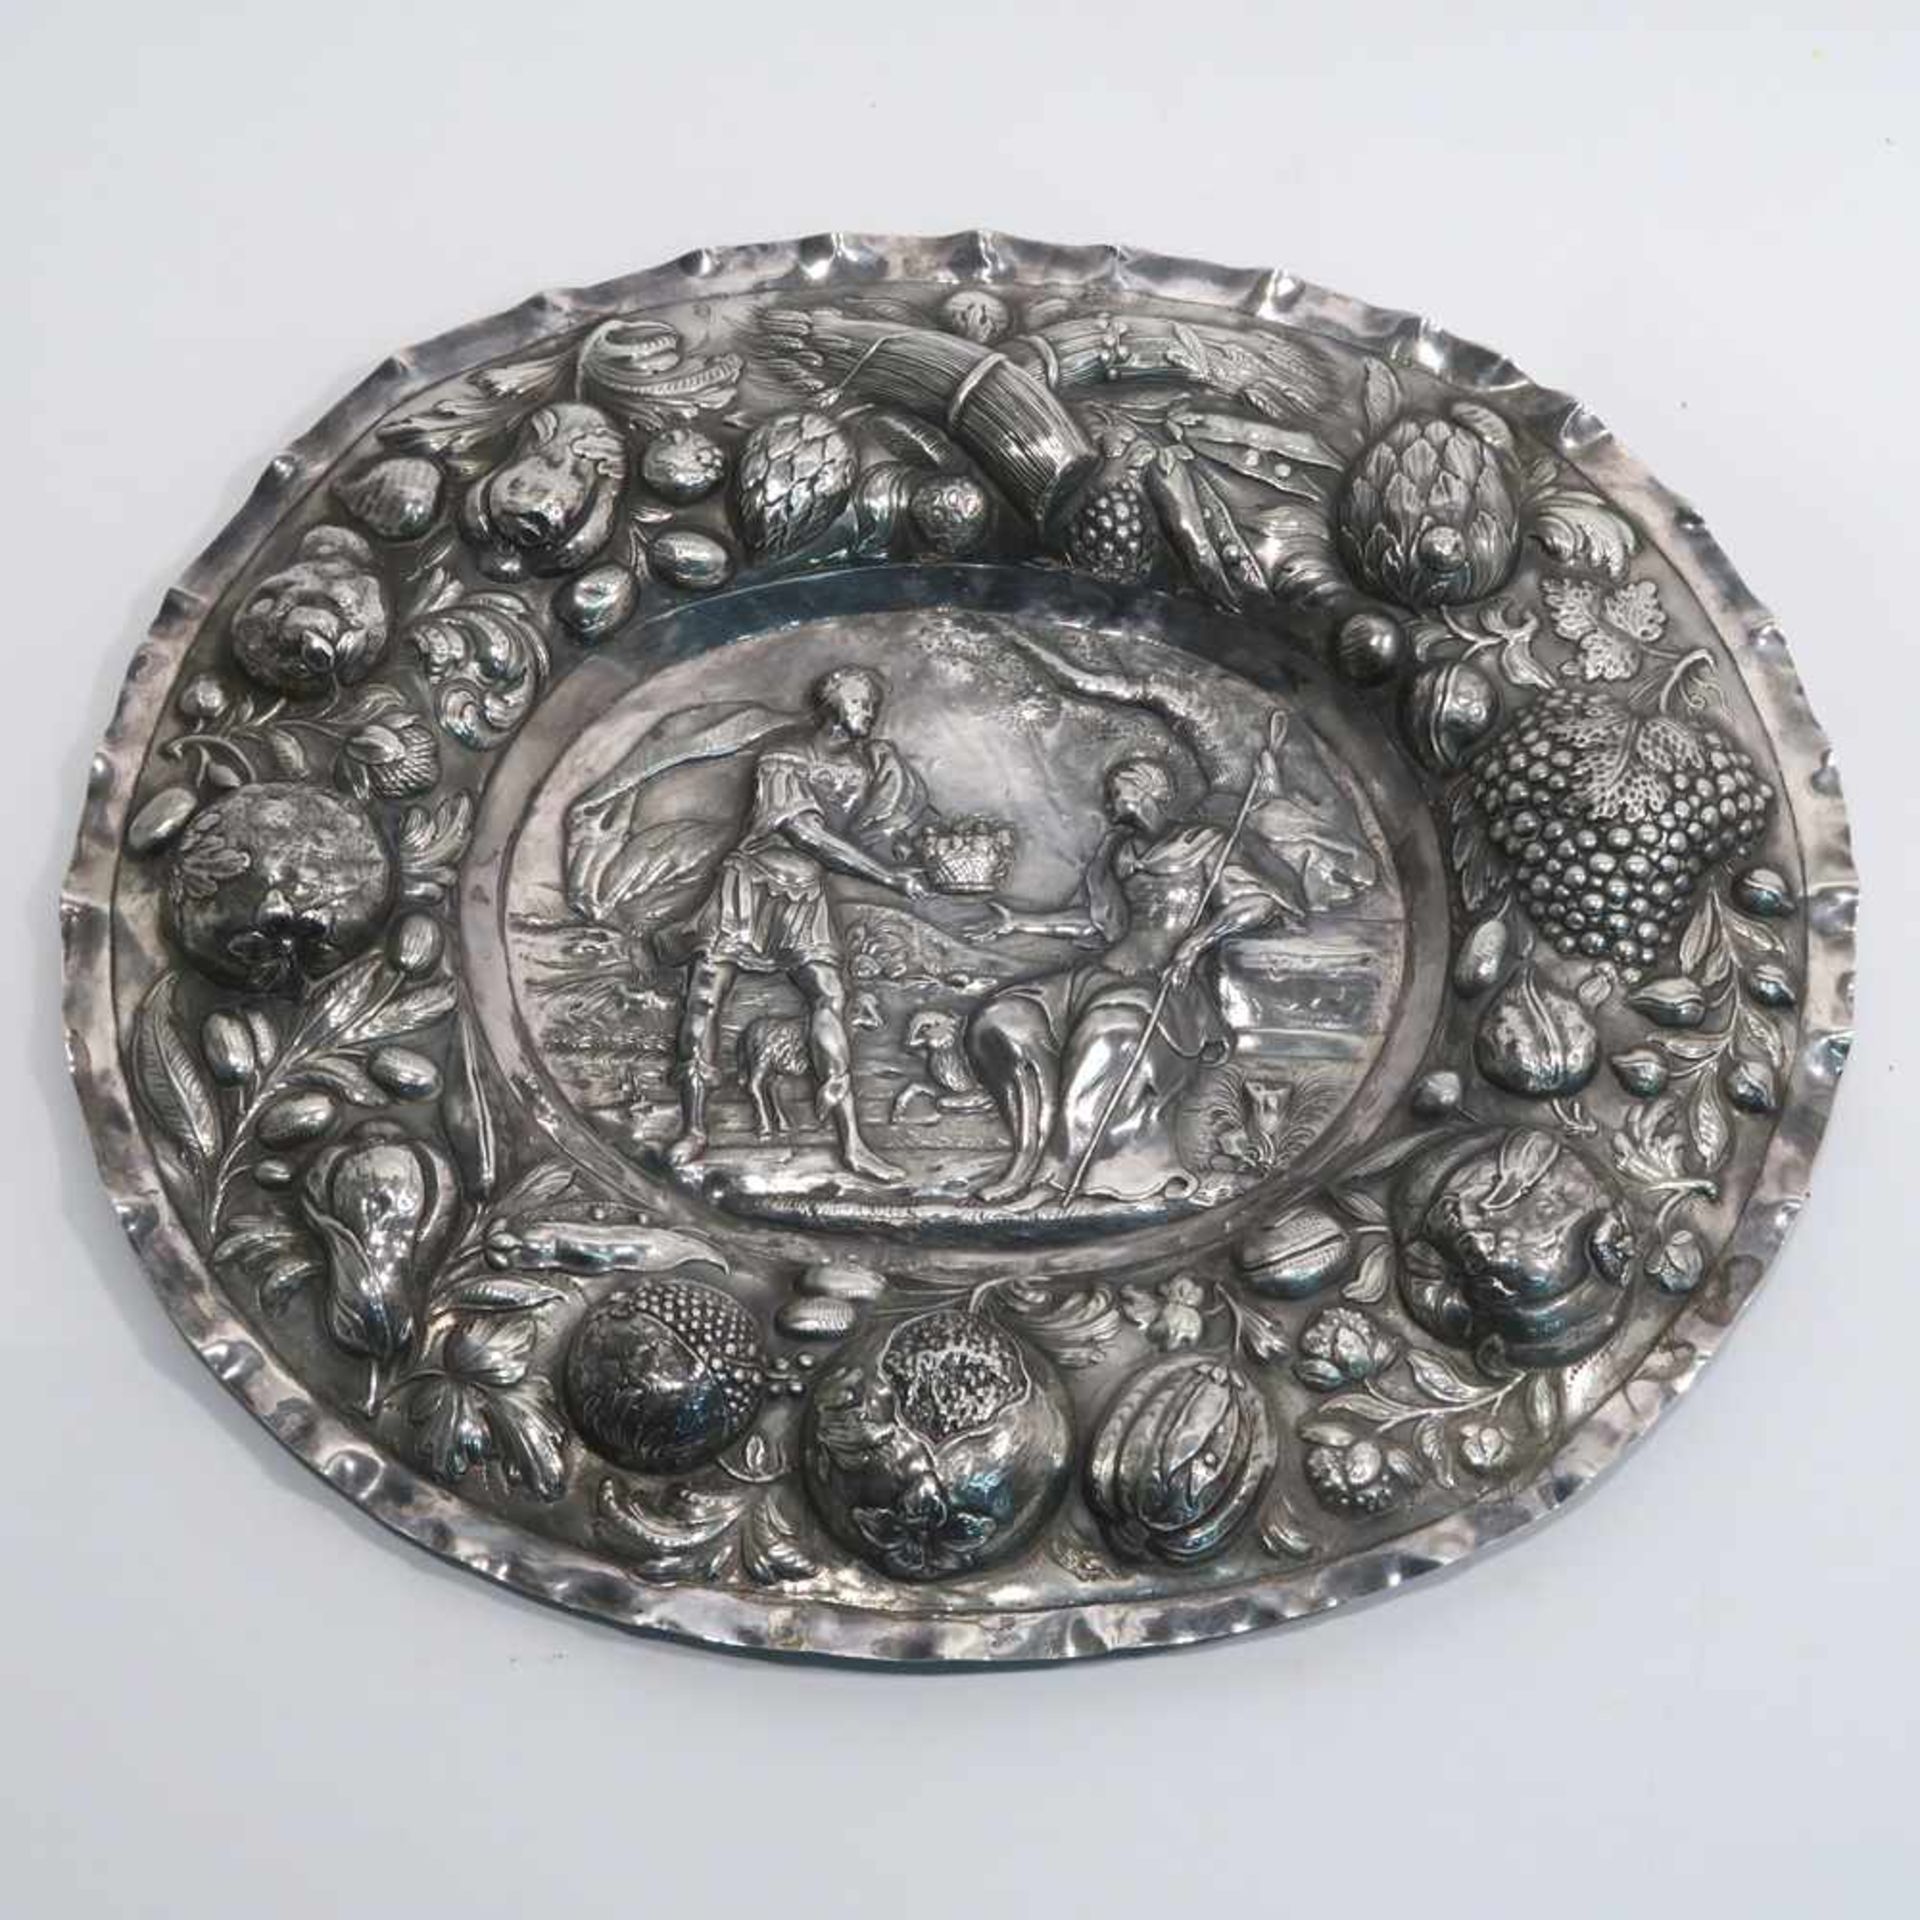 Ovale ZierplatteBarockstil. Silber. Reliefdekor: Im Fond antike Szene mit römischem Boten, der einer